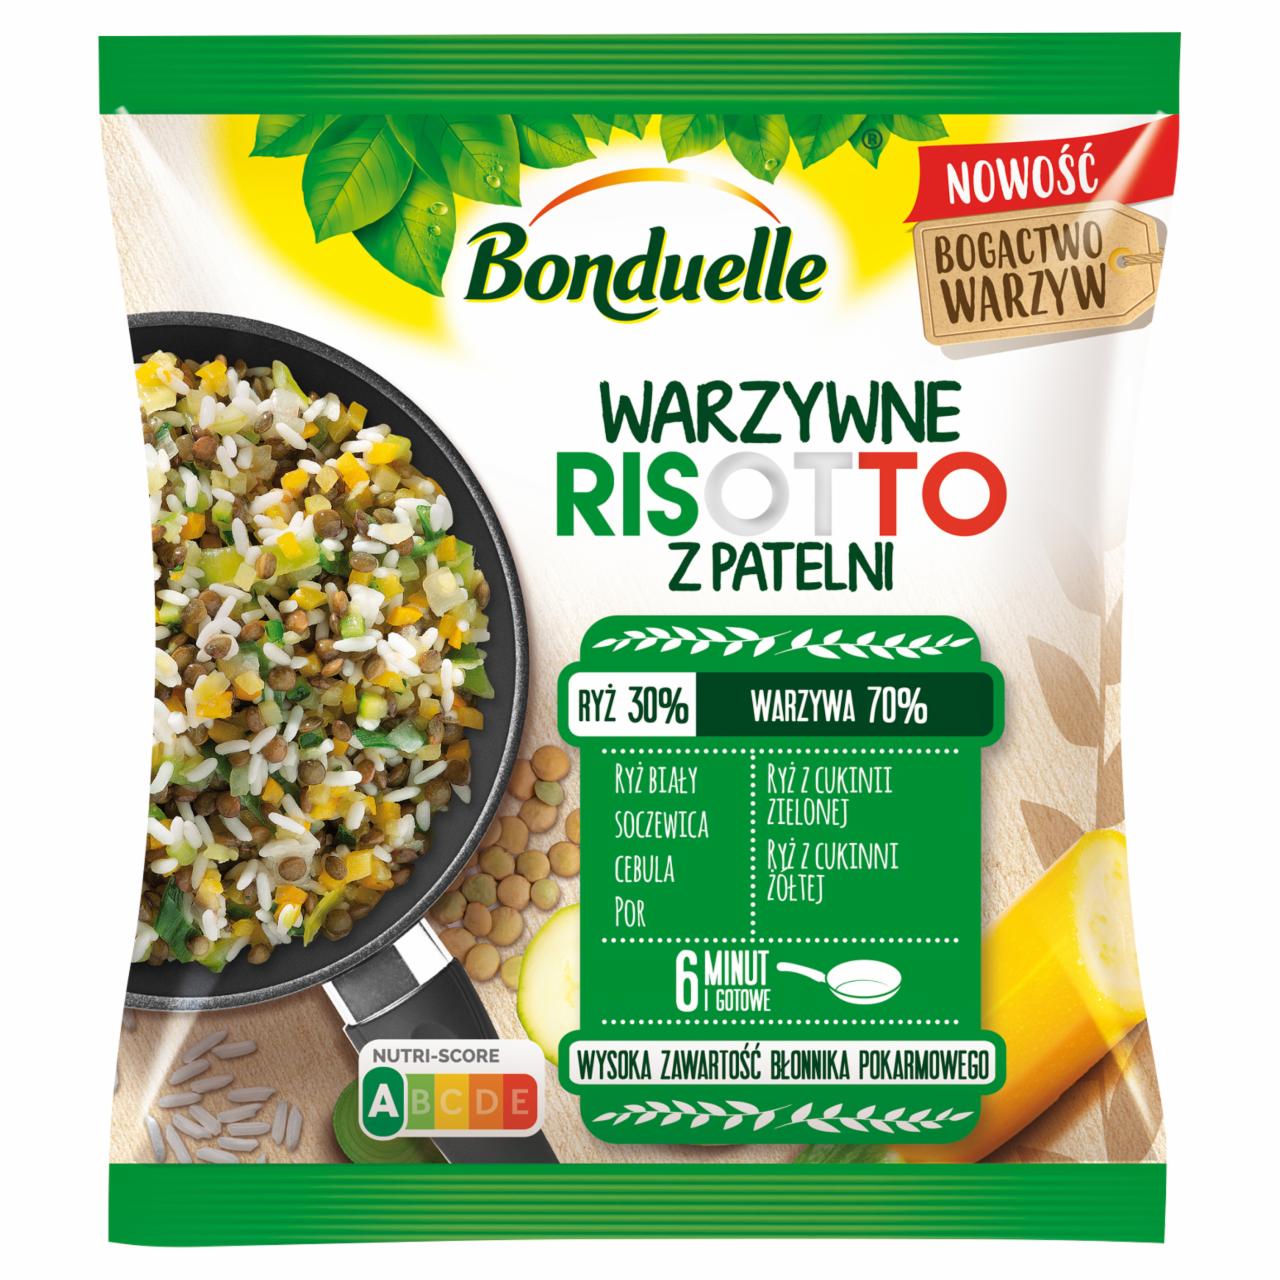 Zdjęcia - Bonduelle Warzywne risotto z patelni 400 g